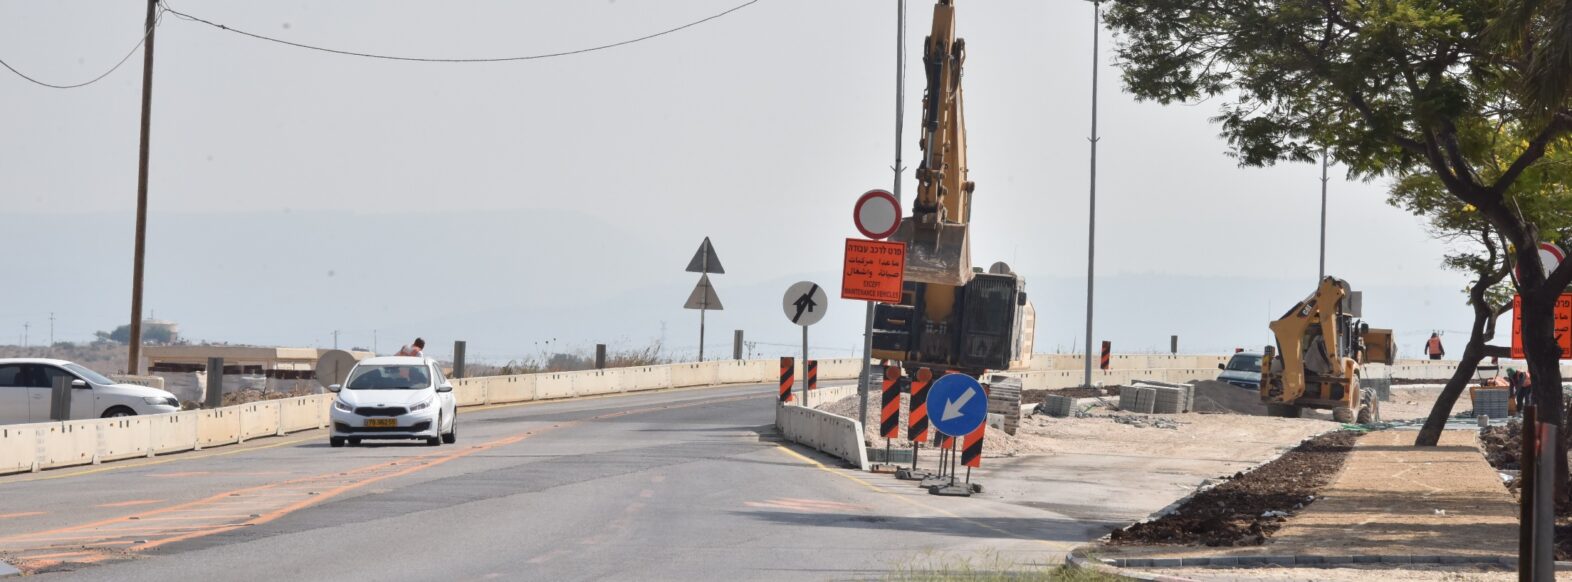 עיריית קרית אתא מבצעת עבודות פיתוח נרחבות בכביש 781 